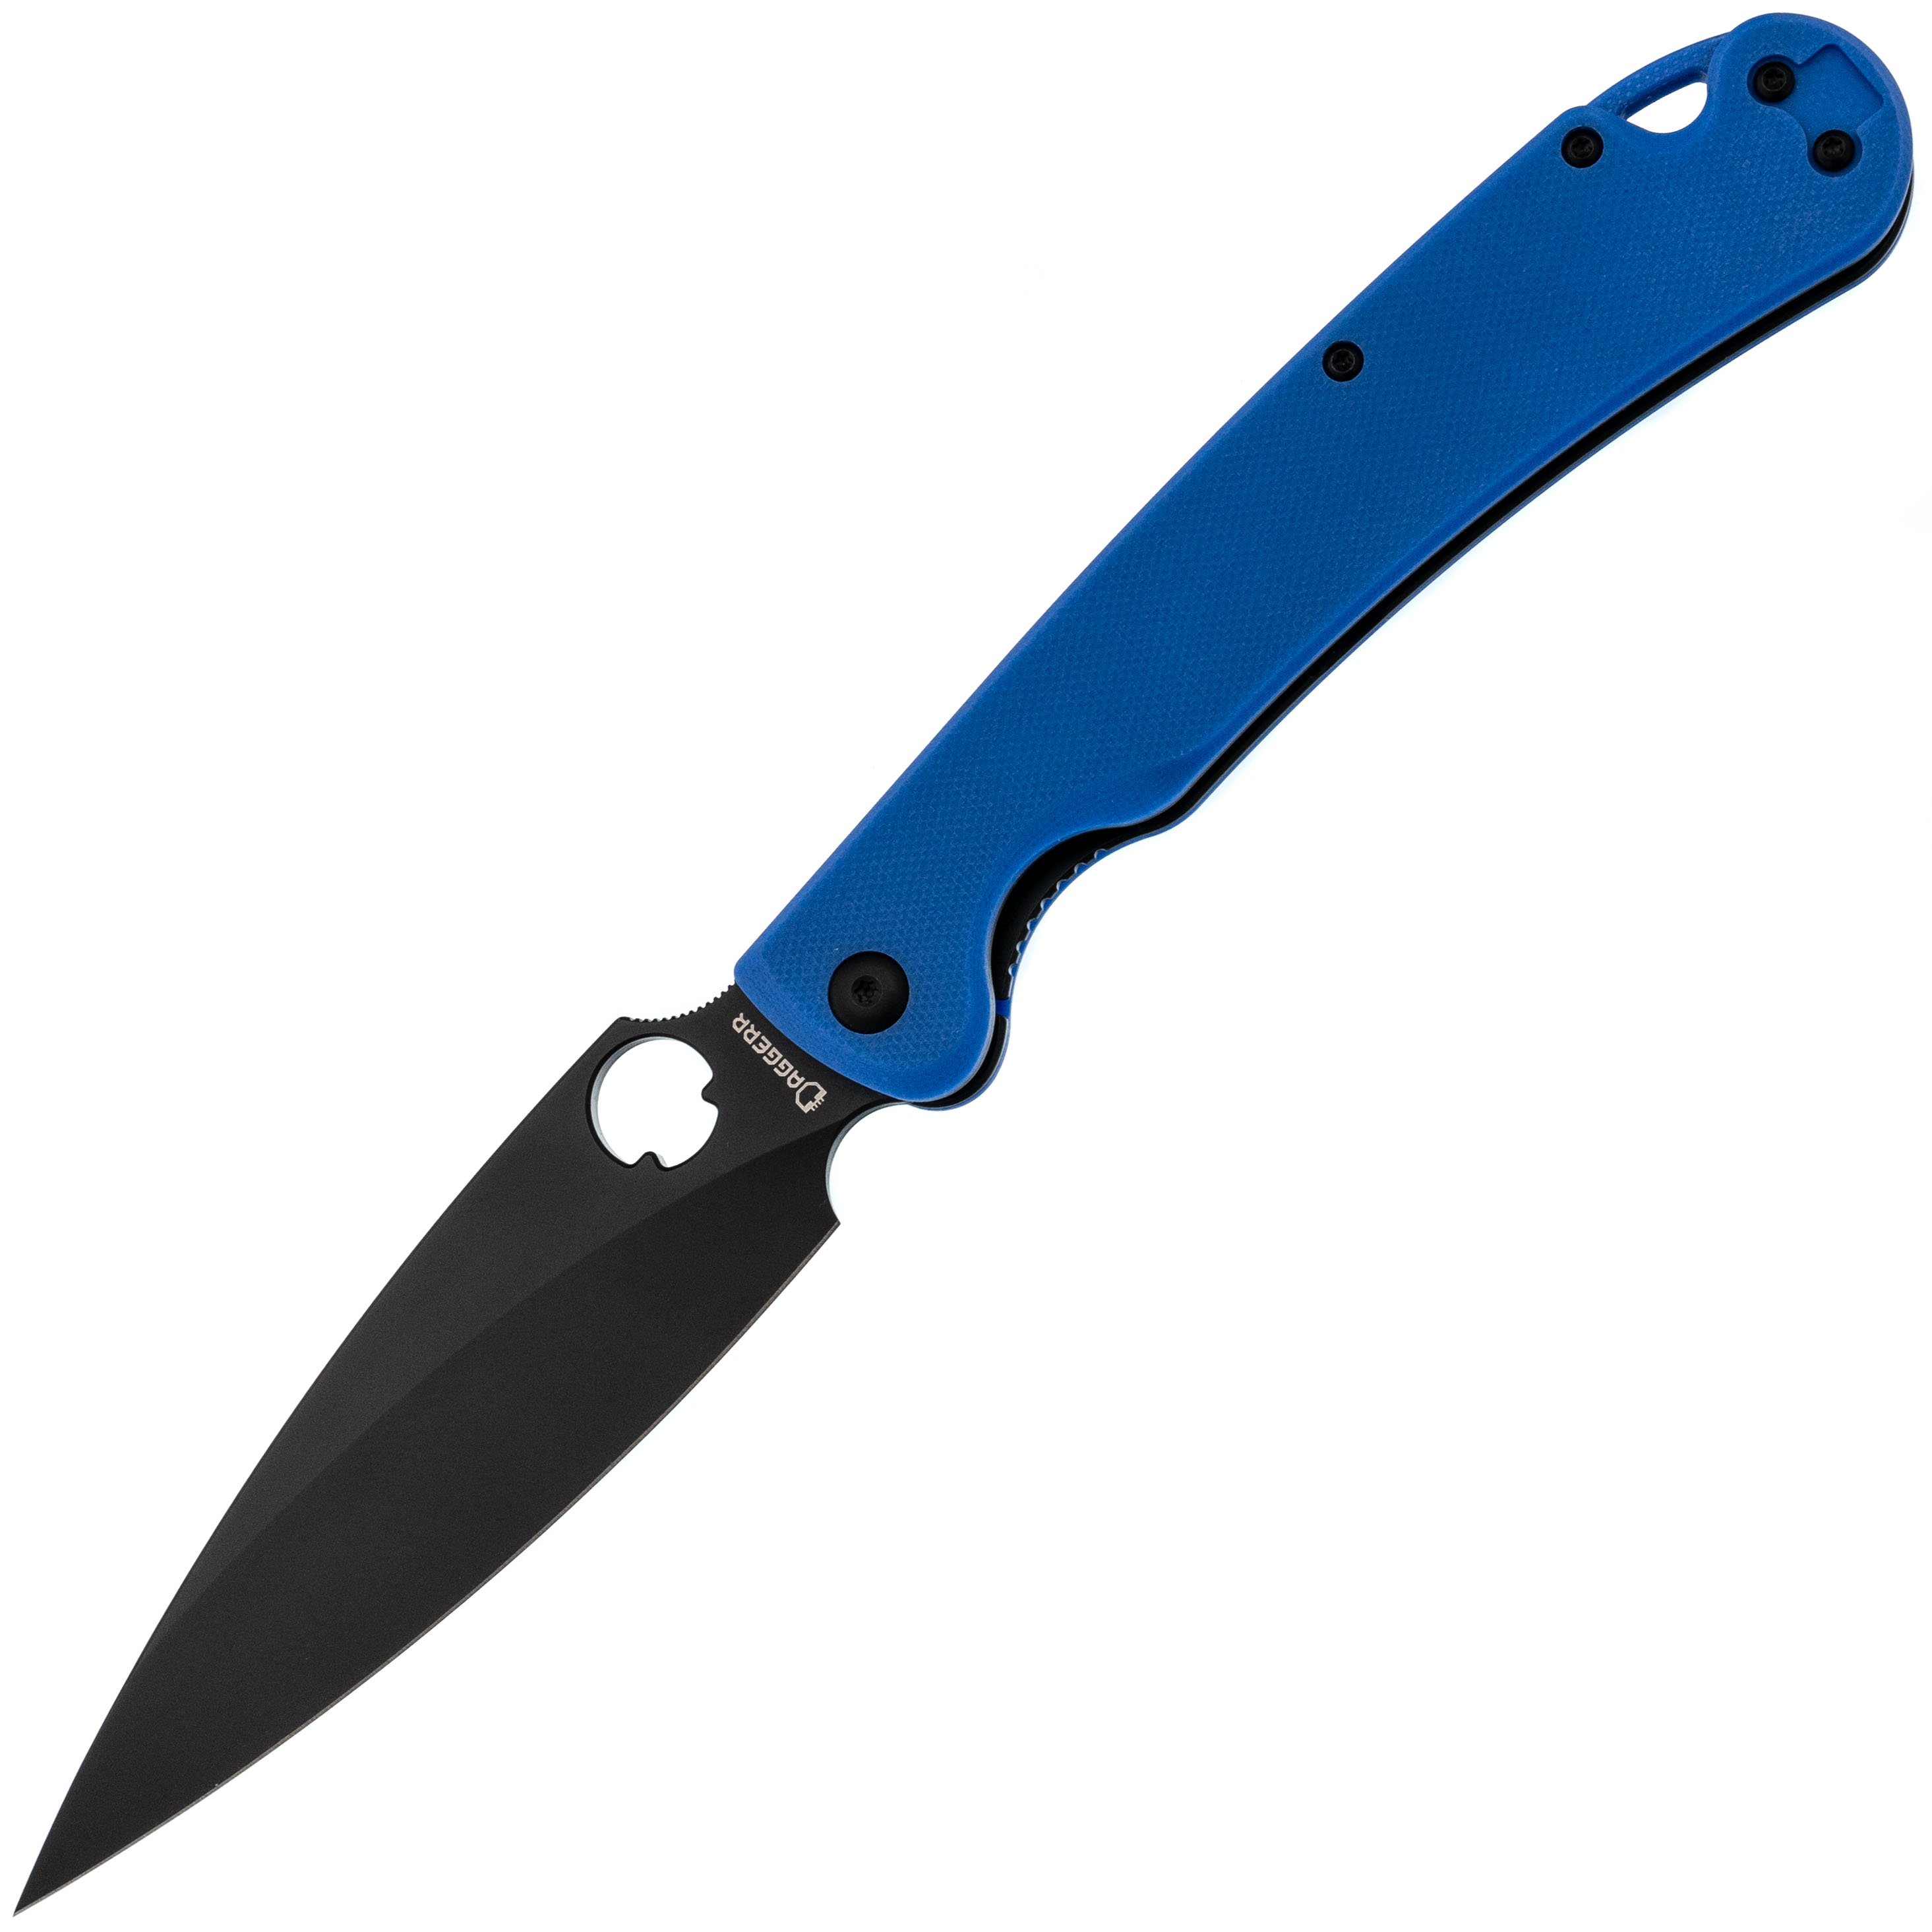 Складной нож Daggerr Sting XL Blue BW DLC, сталь D2, рукоять G10, Бренды, DAGGERR